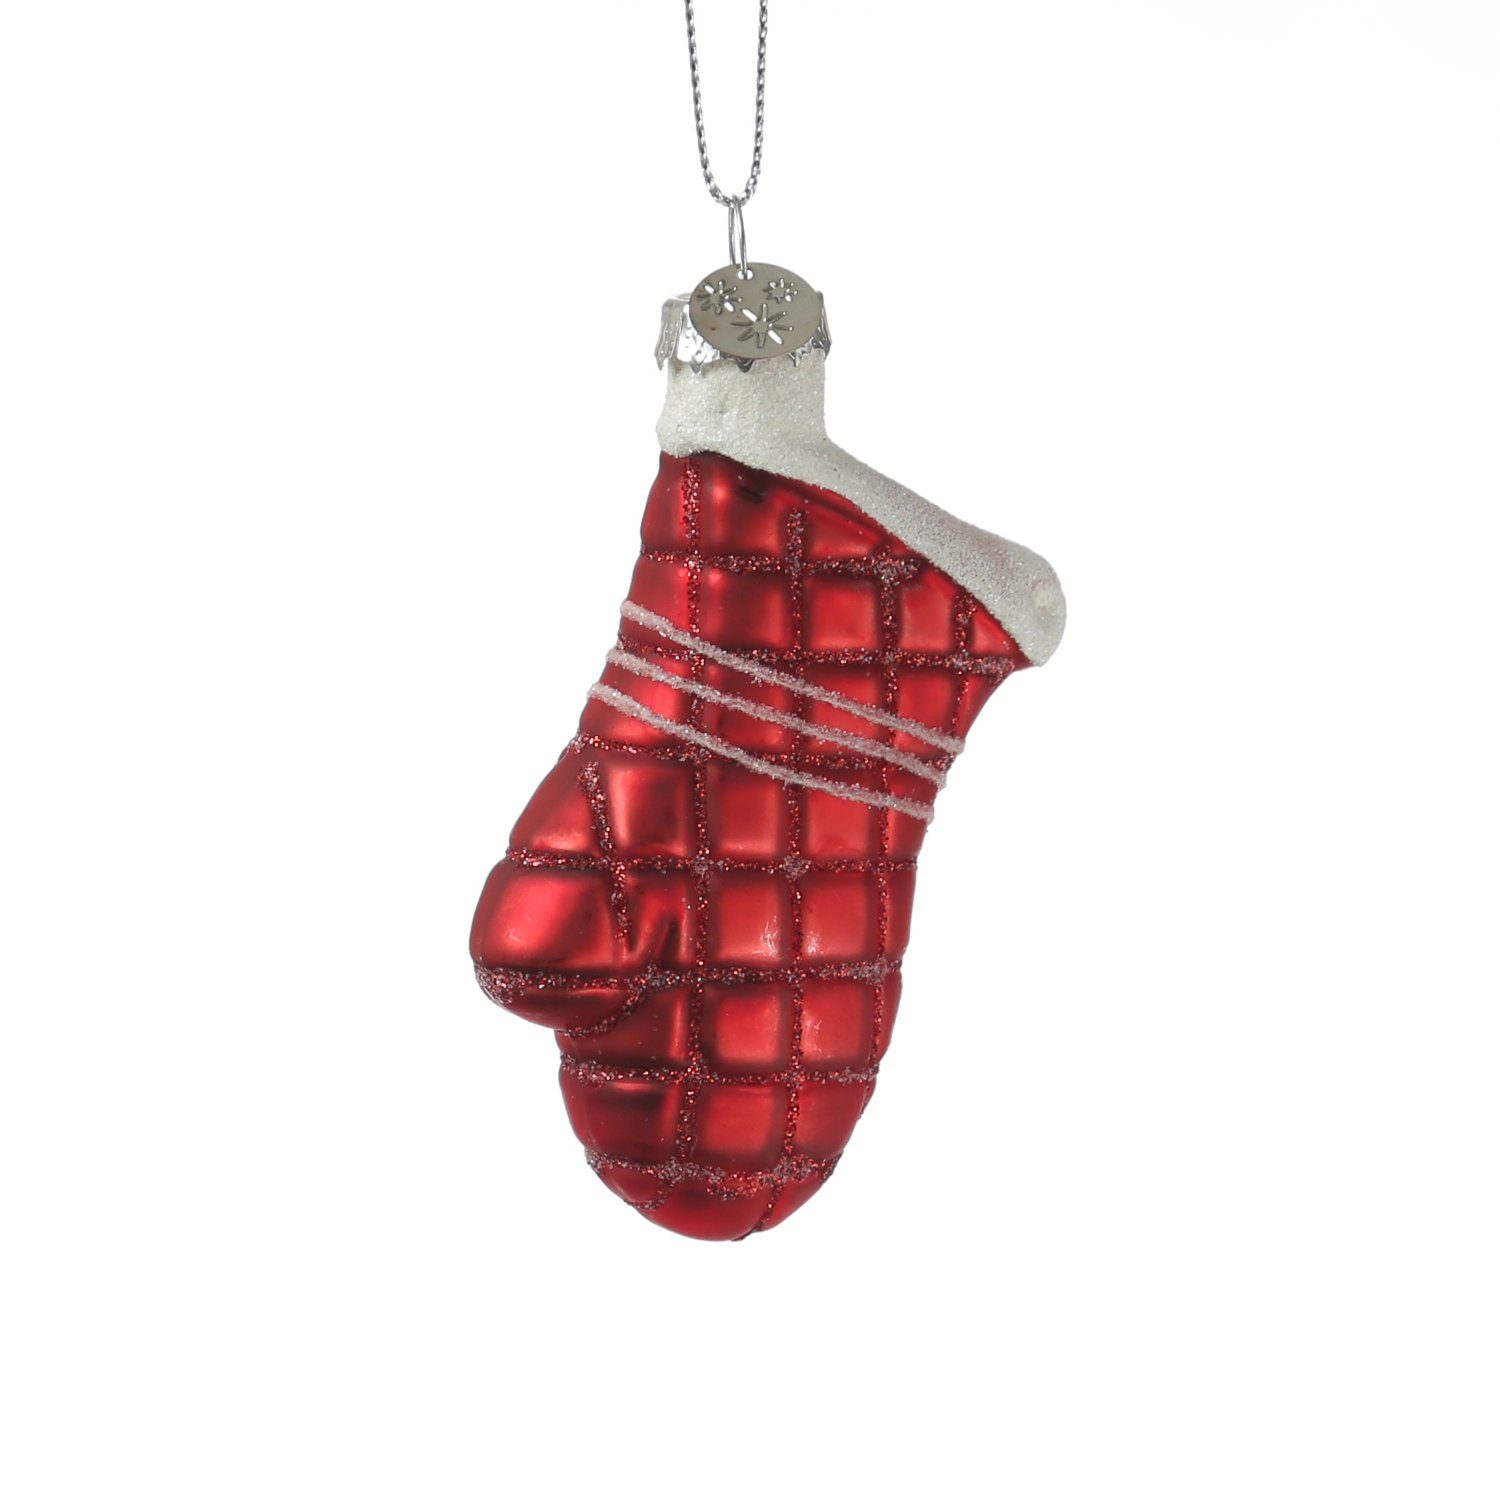 Christbaumschmuck H: MARELIDA 8,5cm Glas Handschuh Baumanhänger Weihnachtsbaumschmuck rot